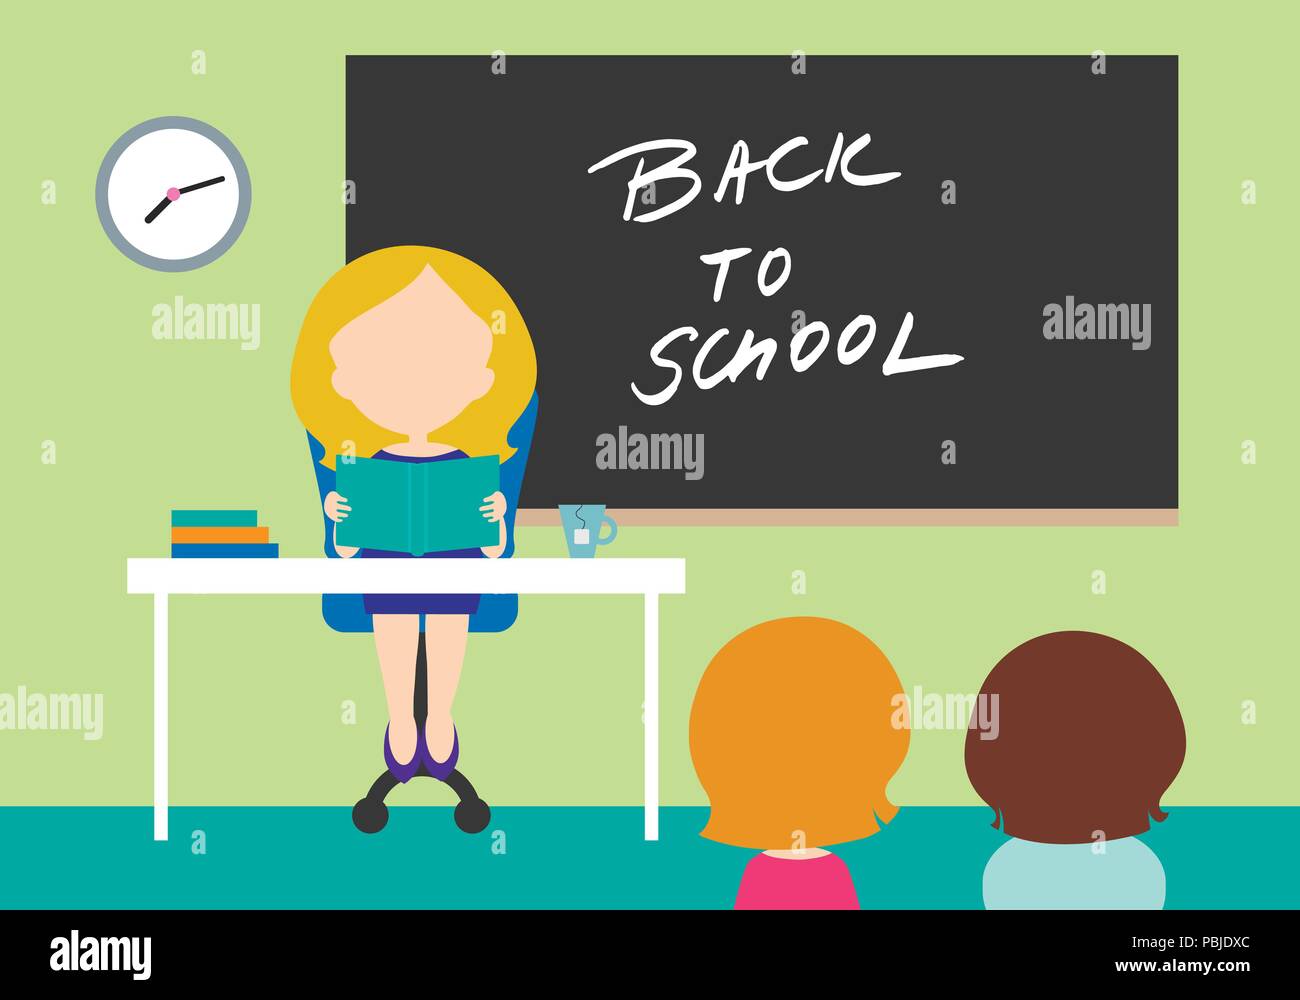 Jeune femme - professeur assis sur une chaise derrière le tableau à l'école classe avec tableau noir avec l'inscription retour à l'école et avec deux étudiants - télévision le desi Illustration de Vecteur